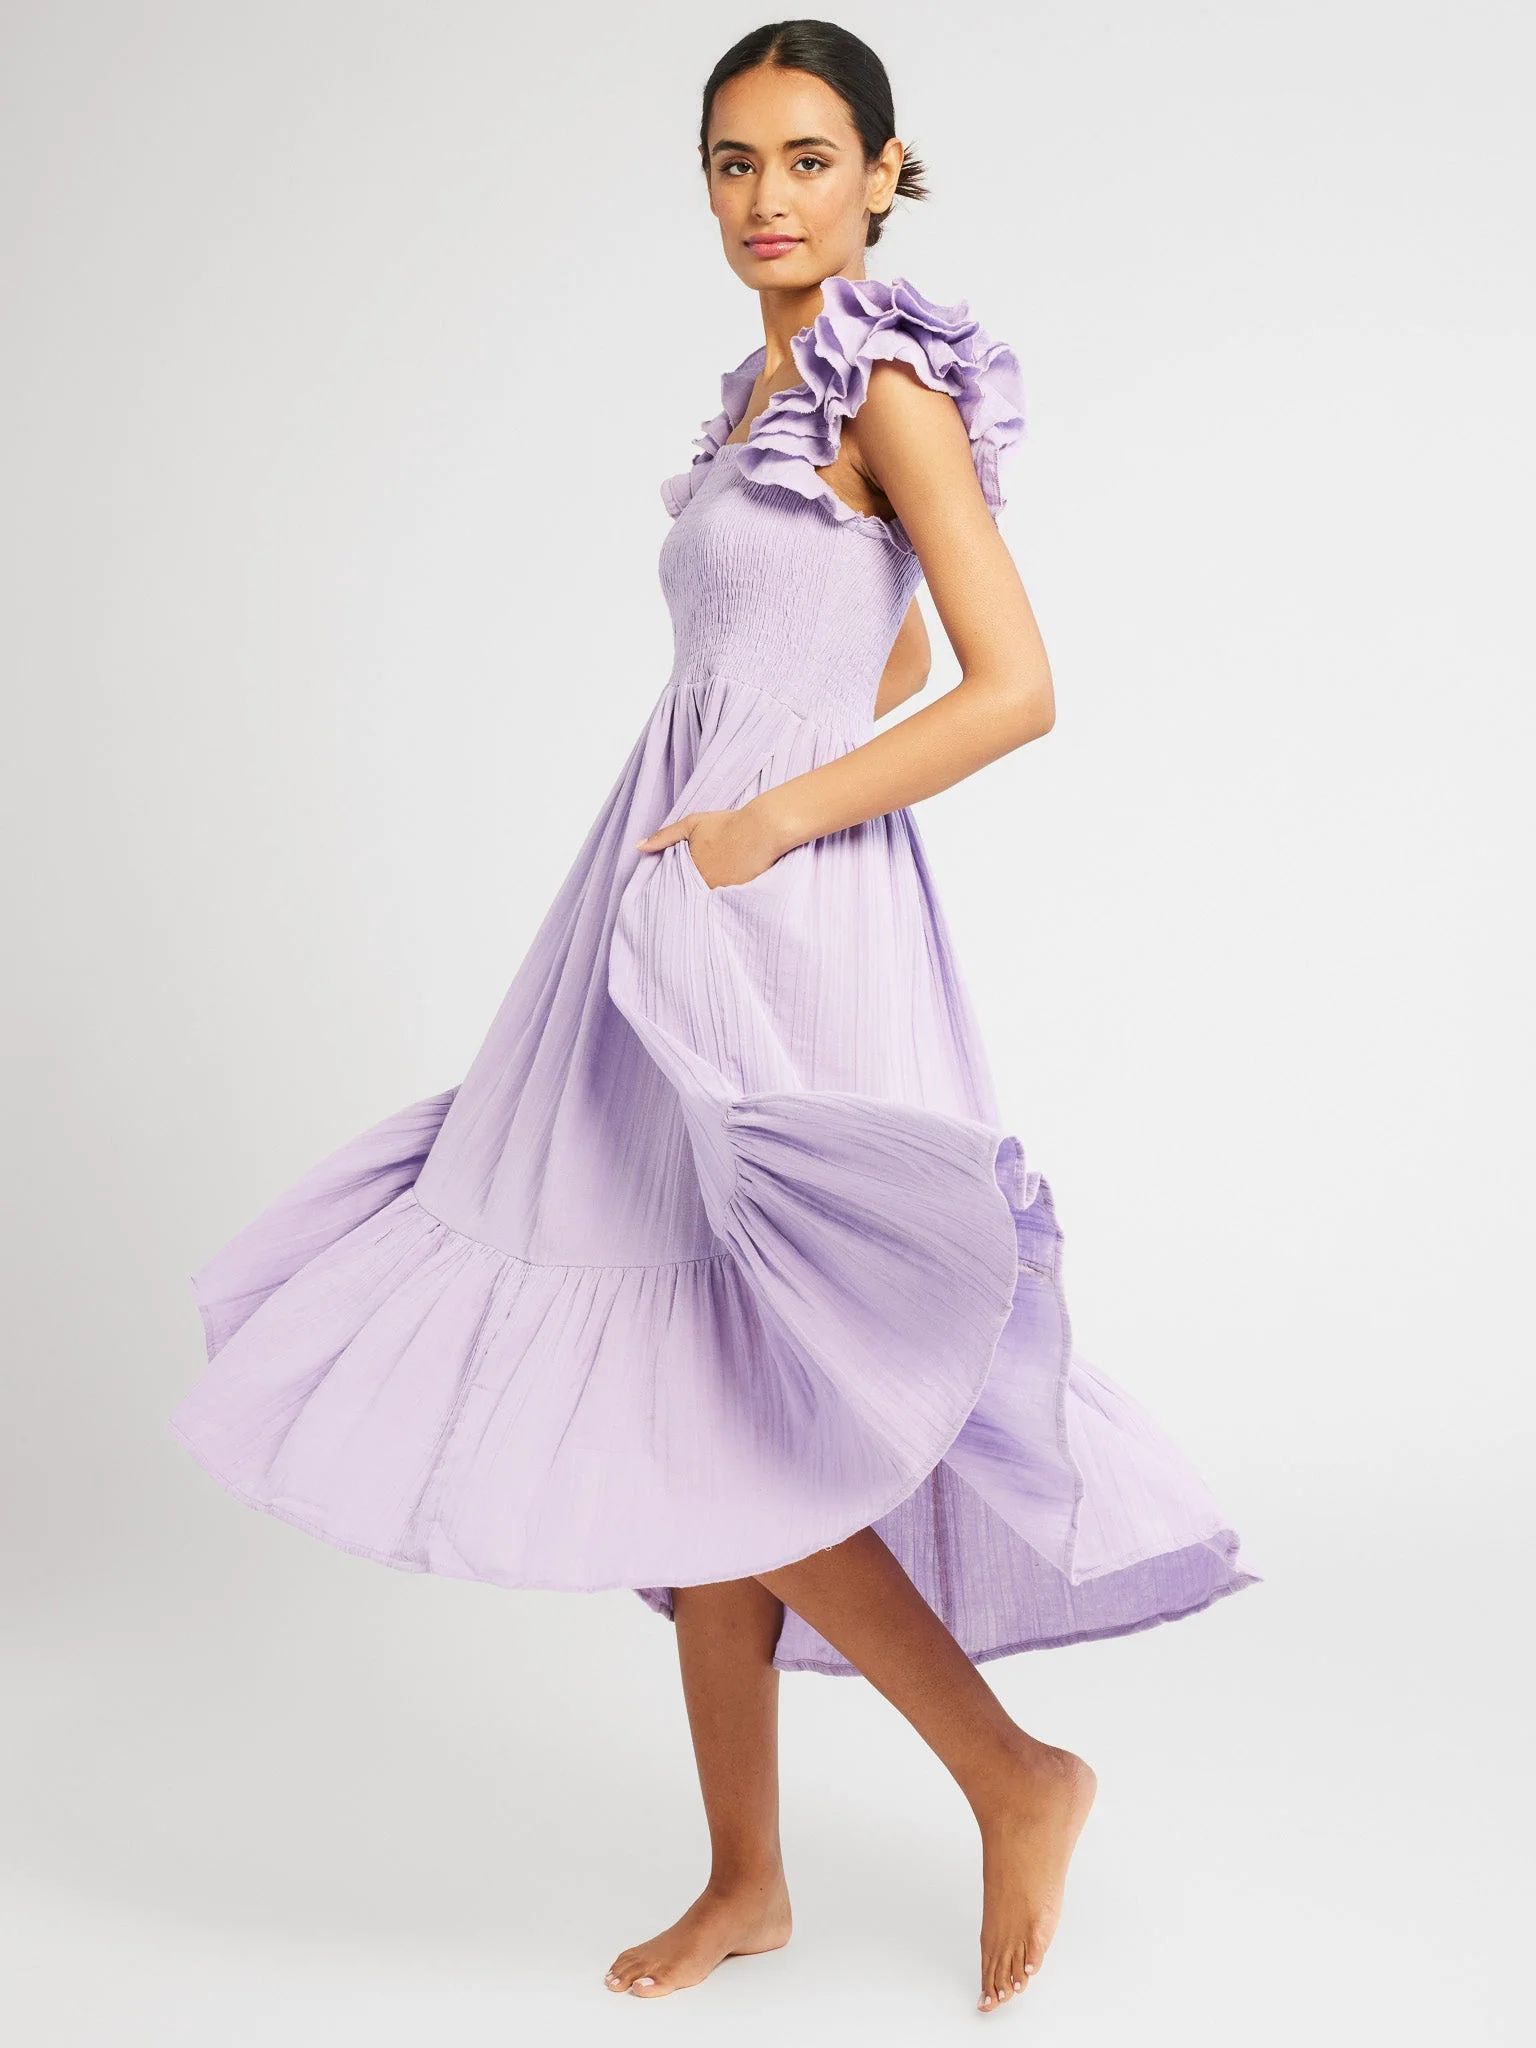 Shop Mille - Olympia Dress in Taffy Double Gauze | Mille